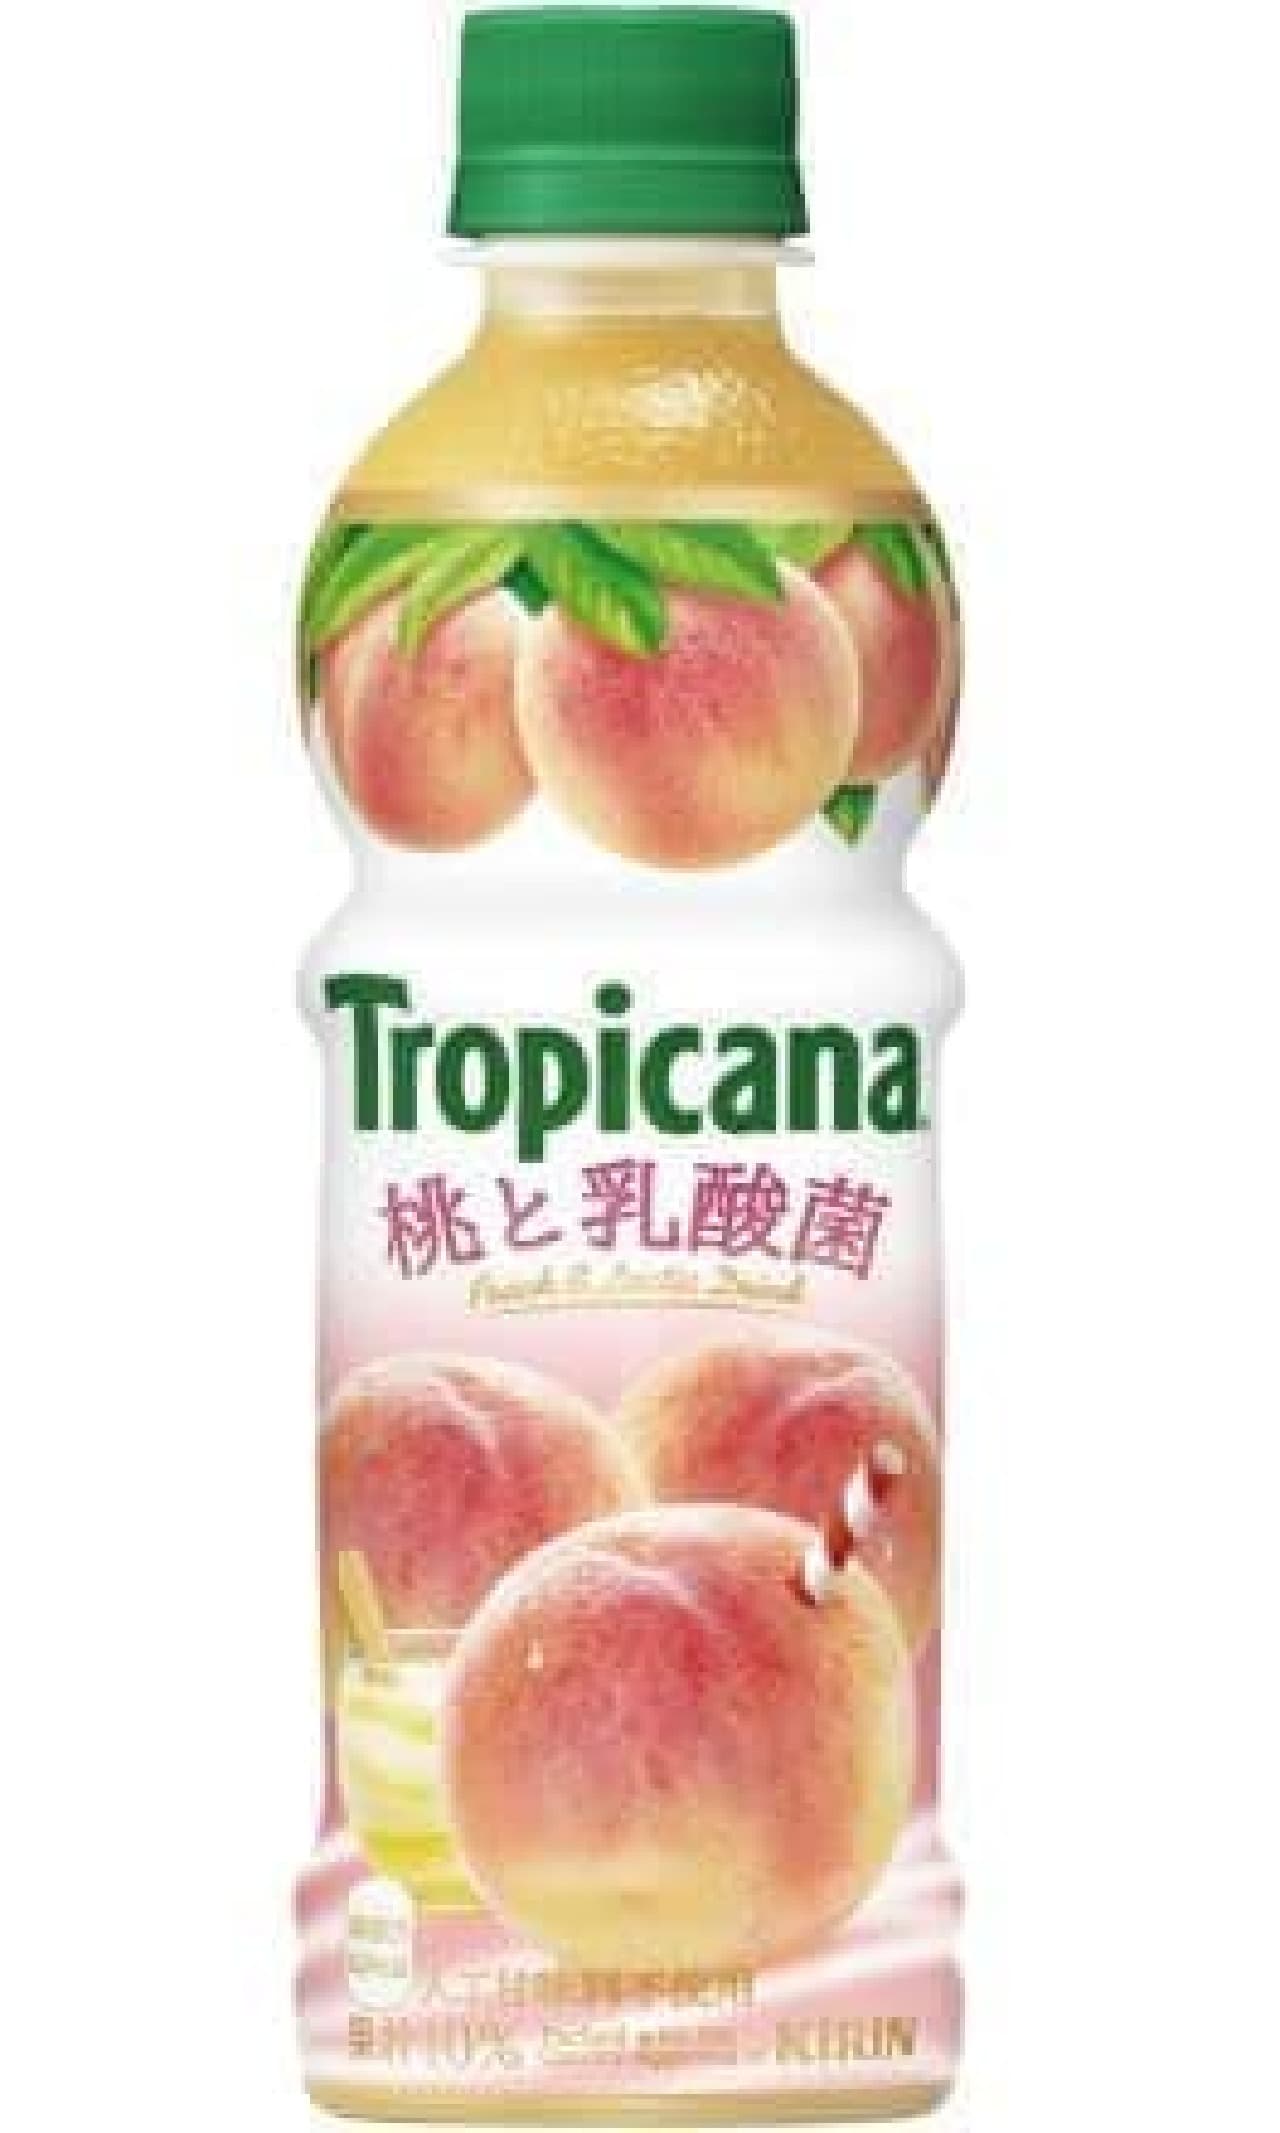 「トロピカーナ 桃と乳酸菌」は、熟した桃の甘さと乳酸菌の心地よい酸味がとけあう果実飲料